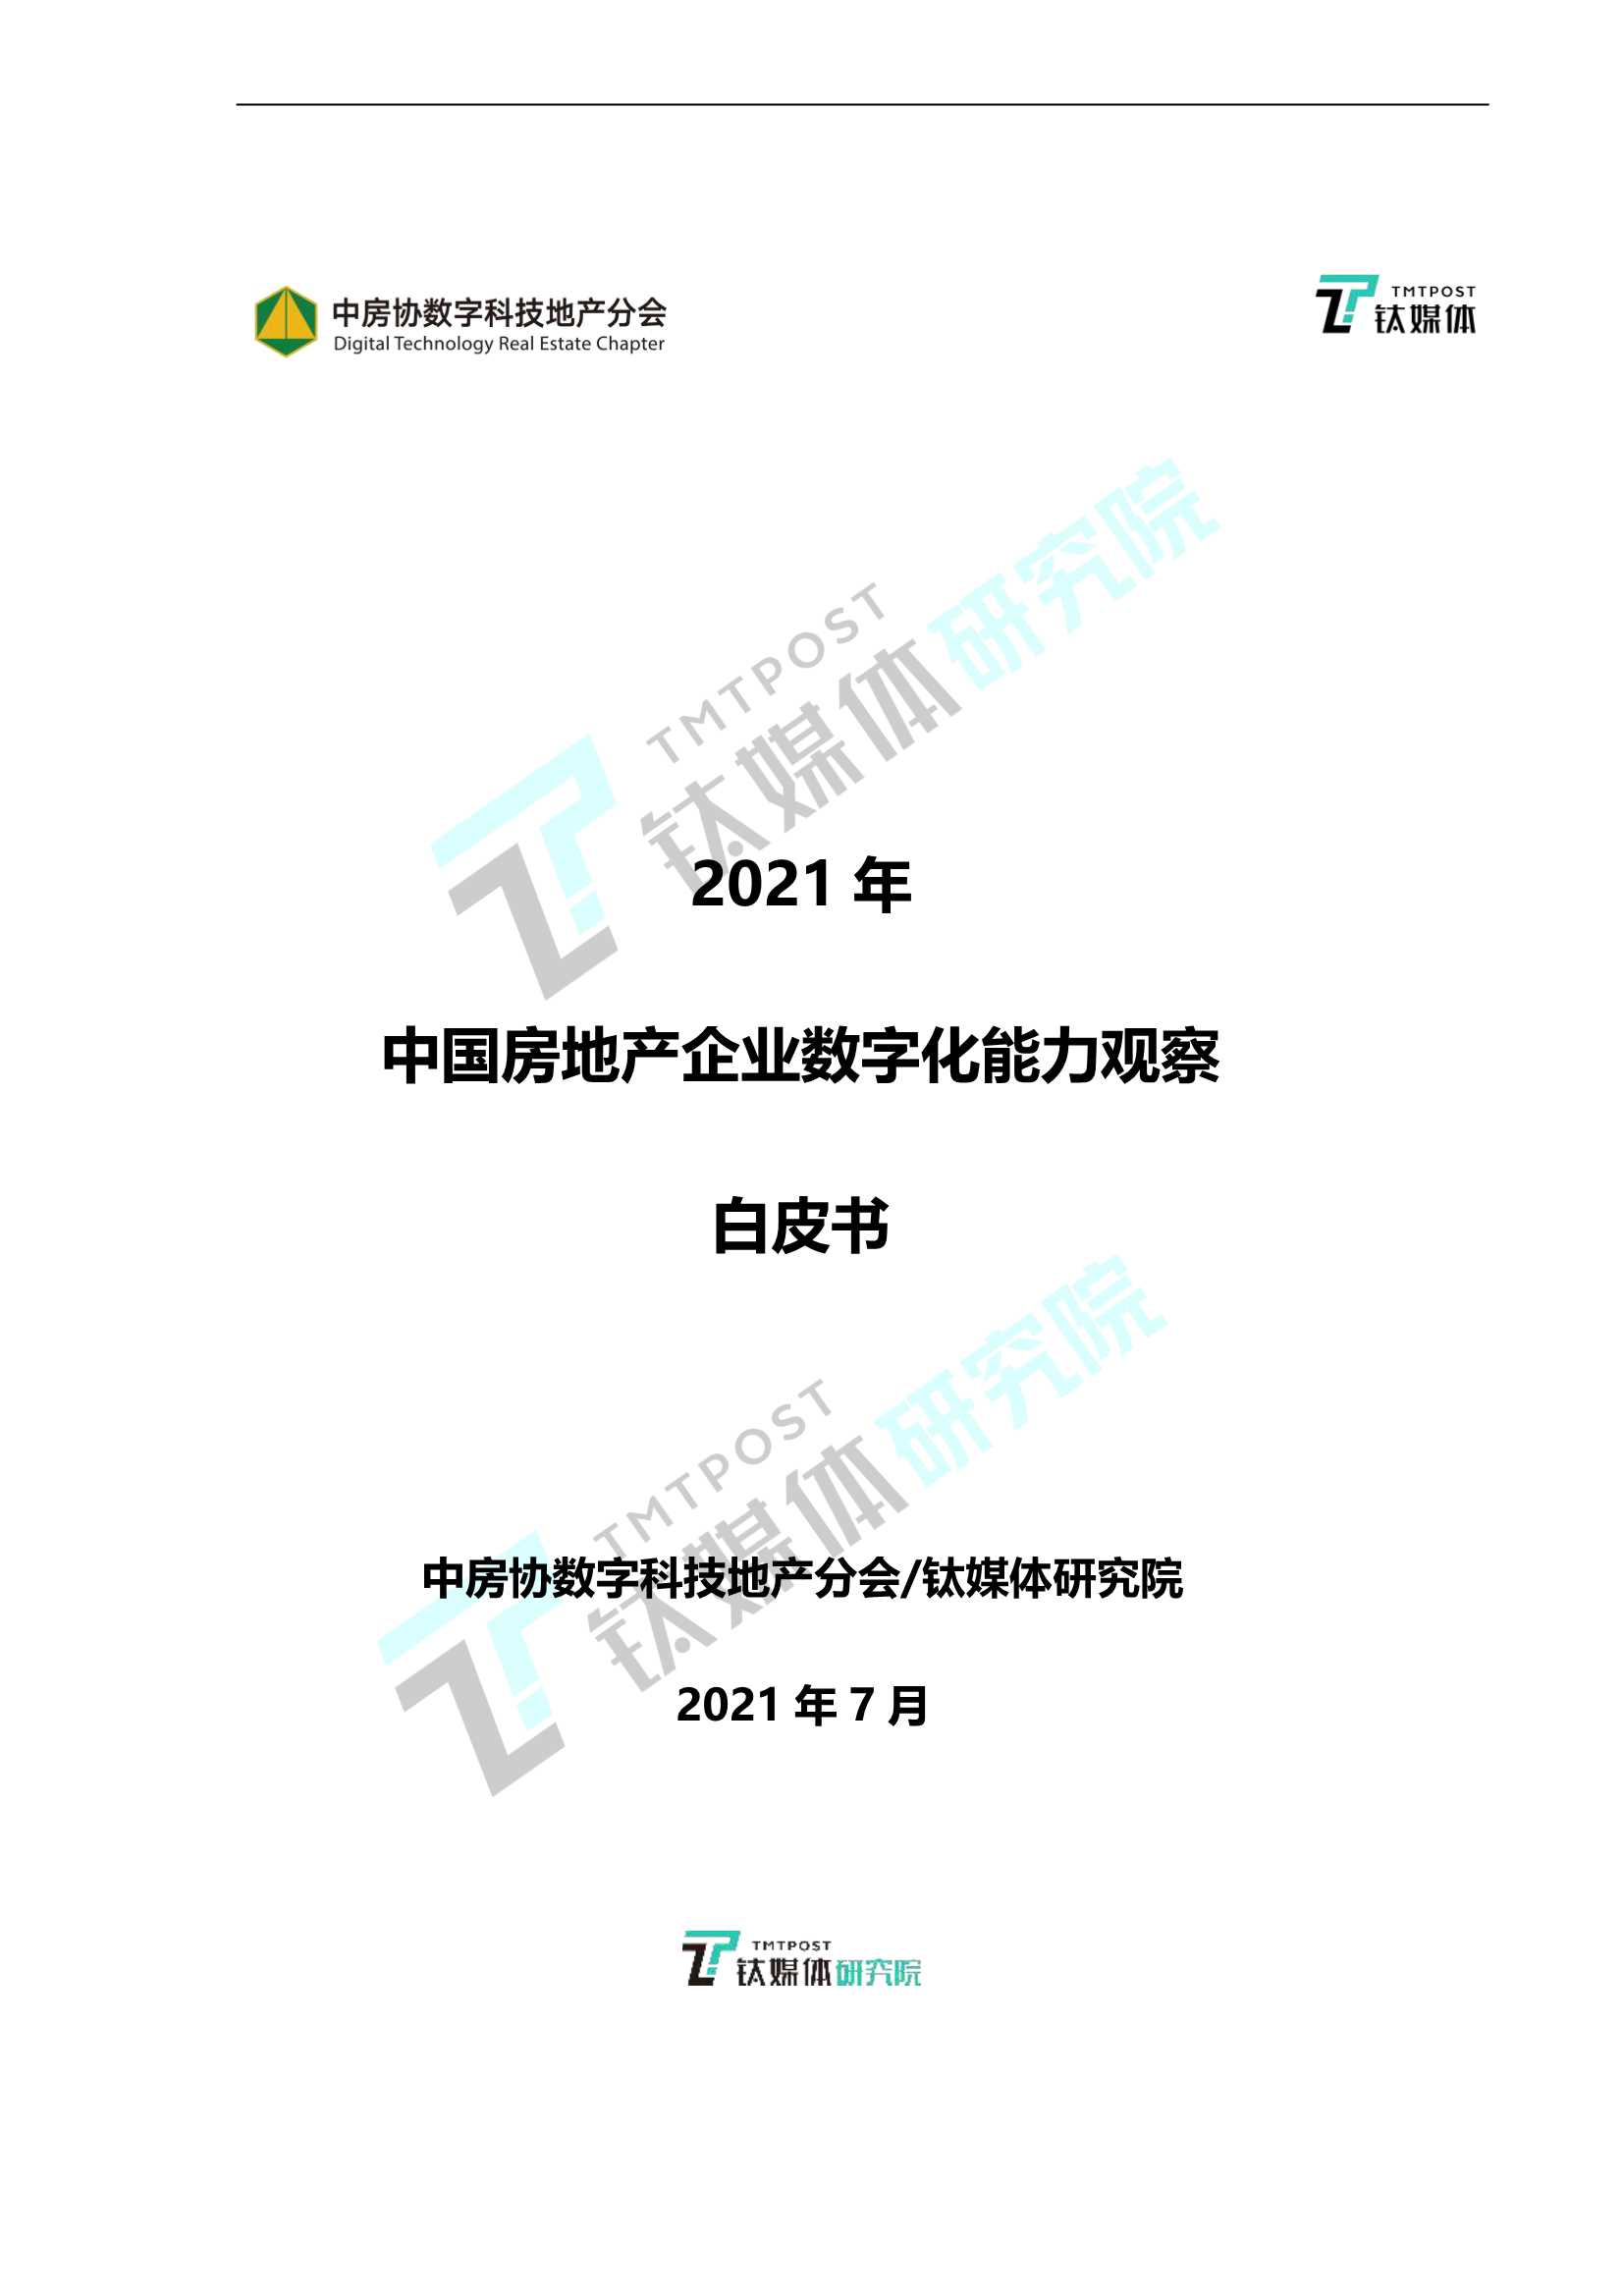 钛媒体-2021年中国房地产企业数字化能力观察白皮书-2021.09-16页